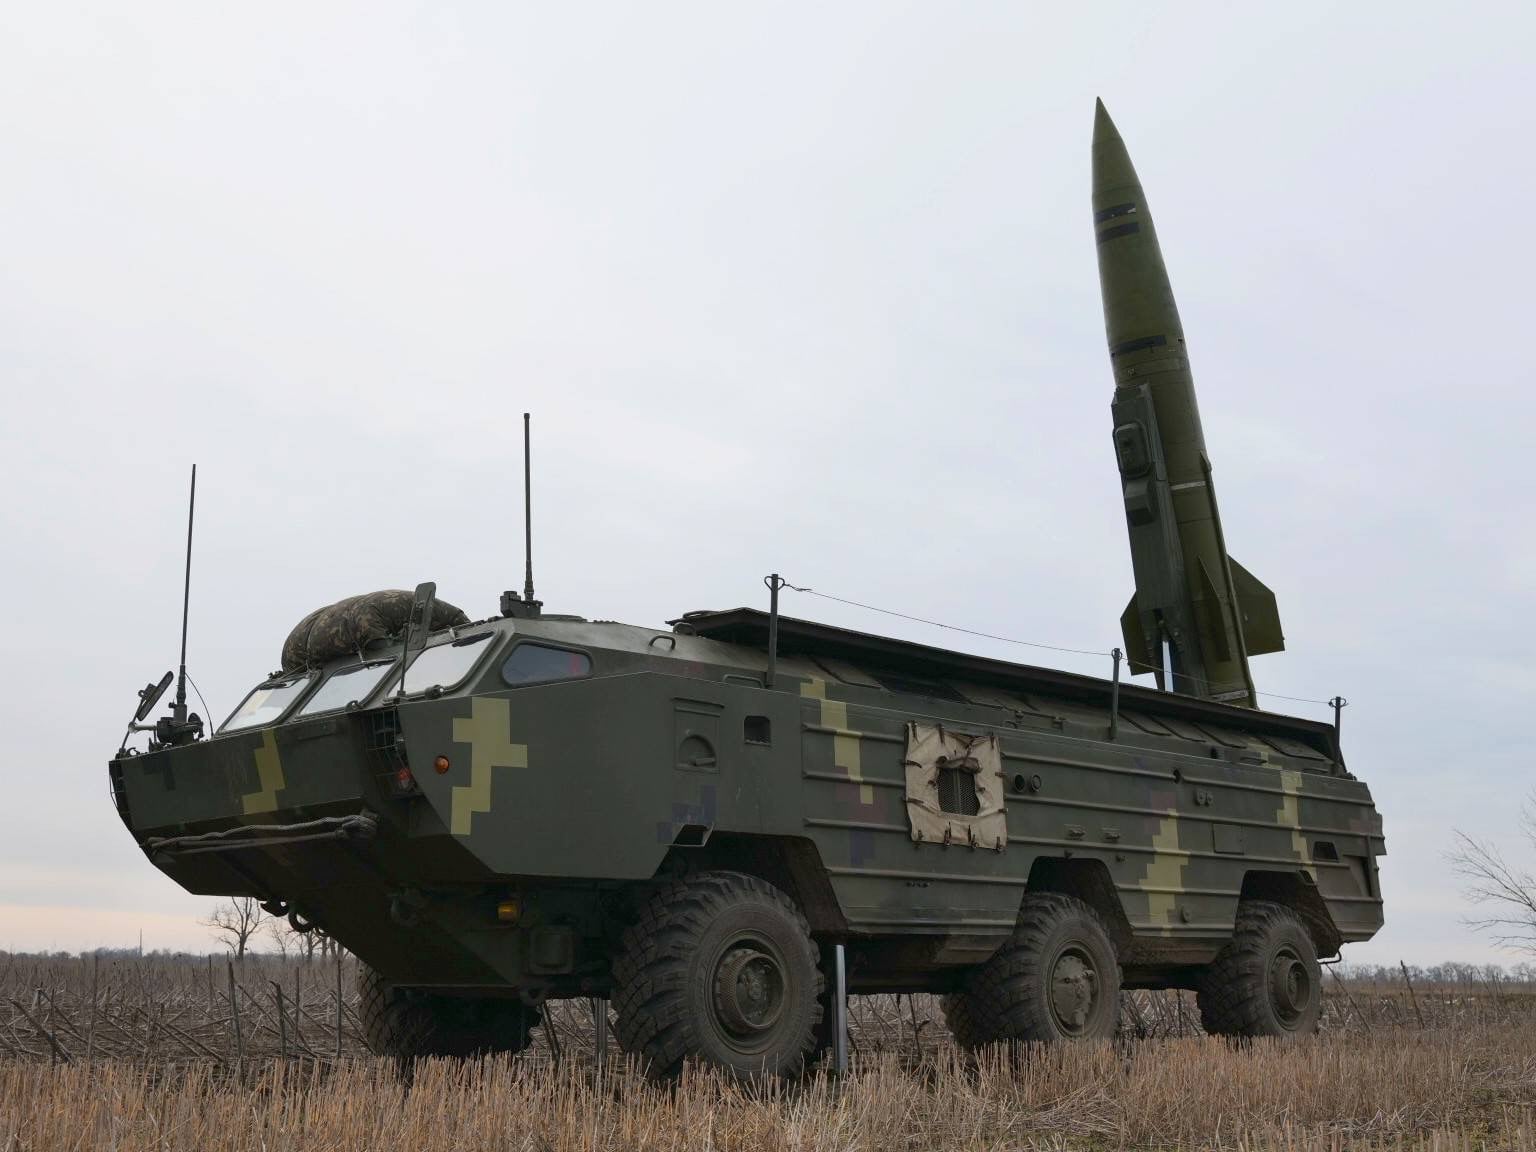 Условный запуск управляемых ракет "Точка-У" провели вблизи Крыма, фото — ООС